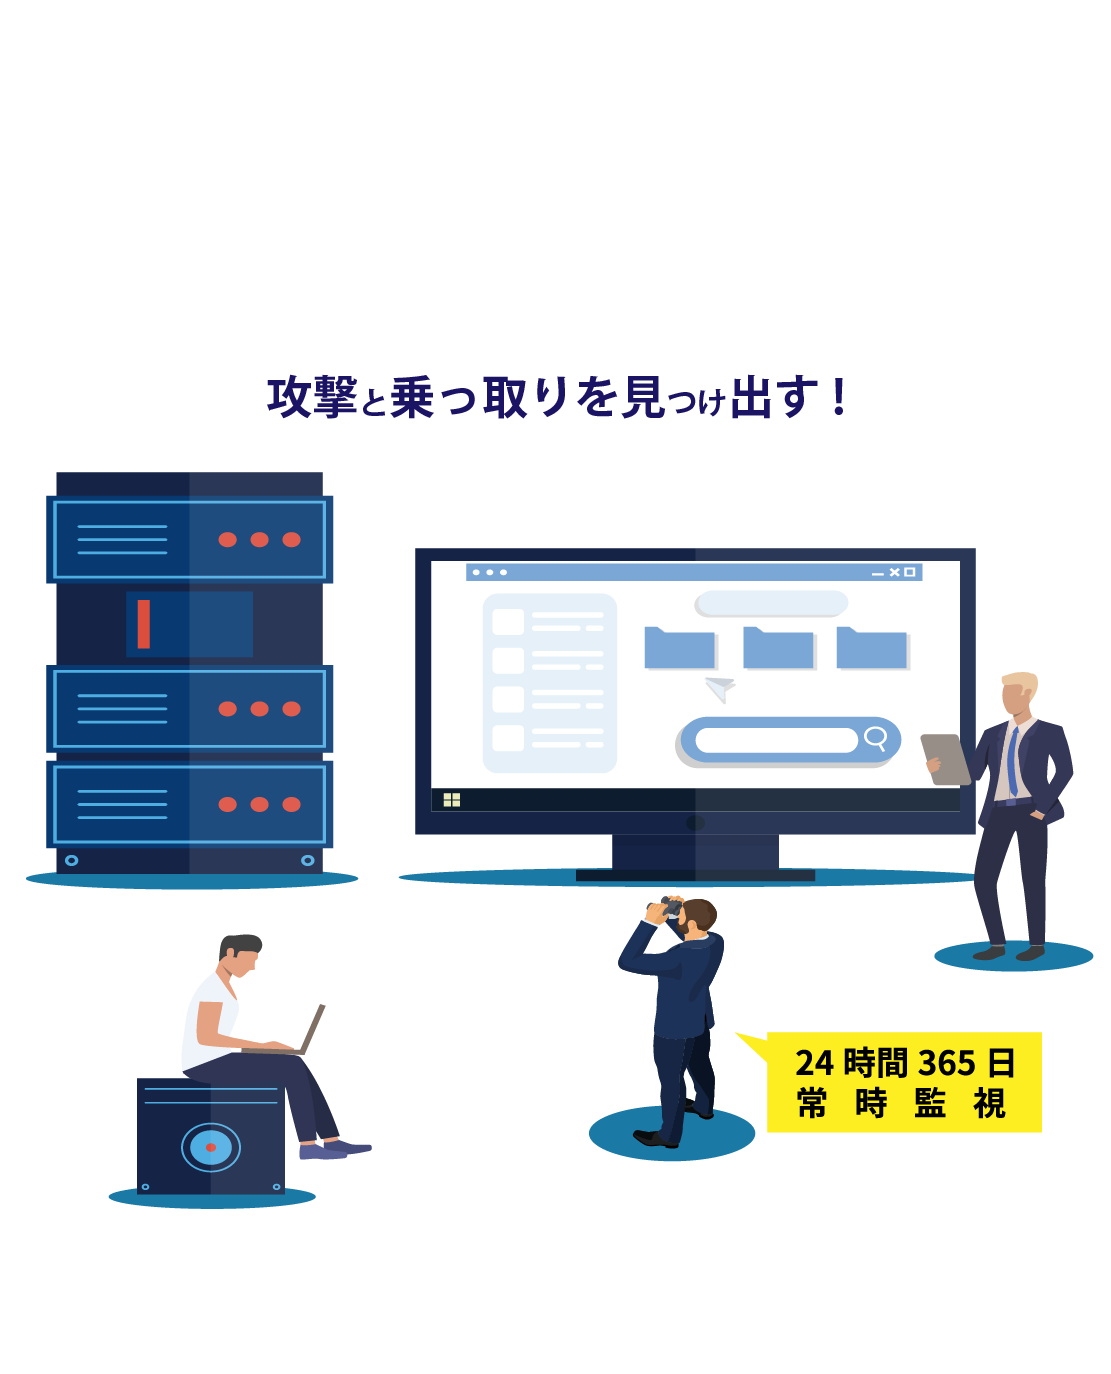 攻撃と乗っ取りを見つけ出す!Active Directory 脅威診断・監視サービス